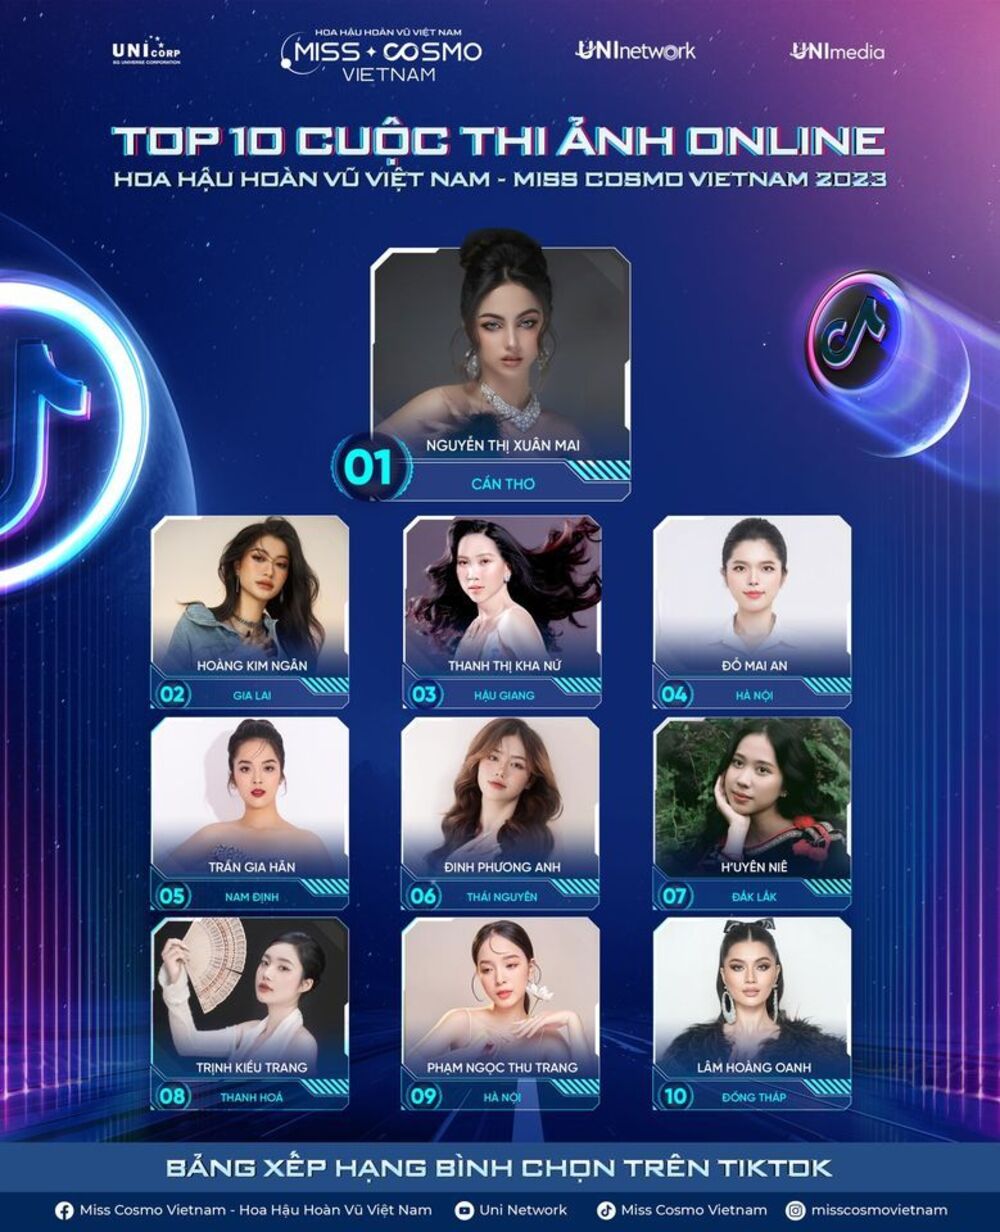 Lộ diện 10 thí sinh dẫn đầu bảng xếp hạng cuộc thi online Hoa hậu Hoàn vũ Việt Nam